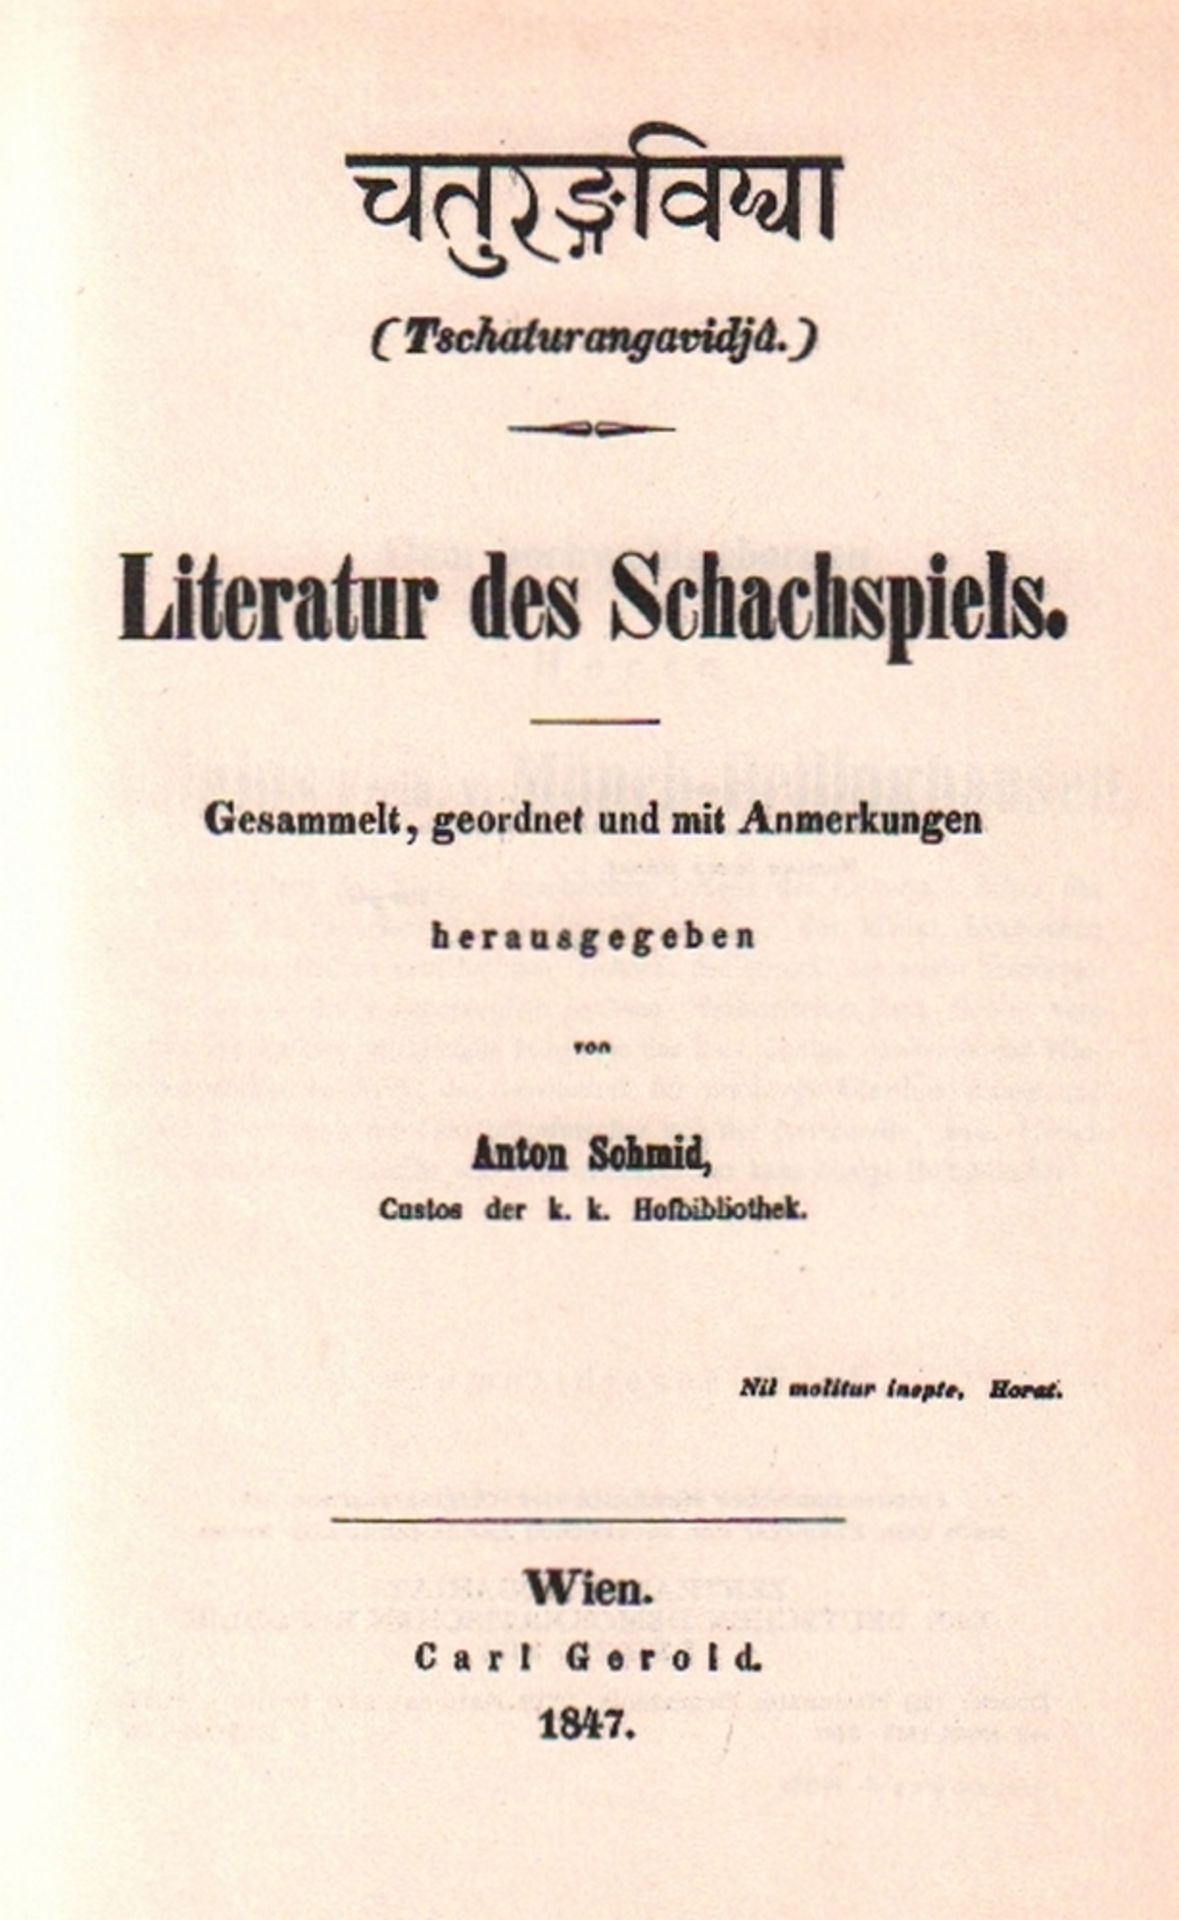 Schmid, Anton. (Hrsg.) Tschaturangavidja. Literatur des Schachspiels. Gesammelt, geordnet und mit